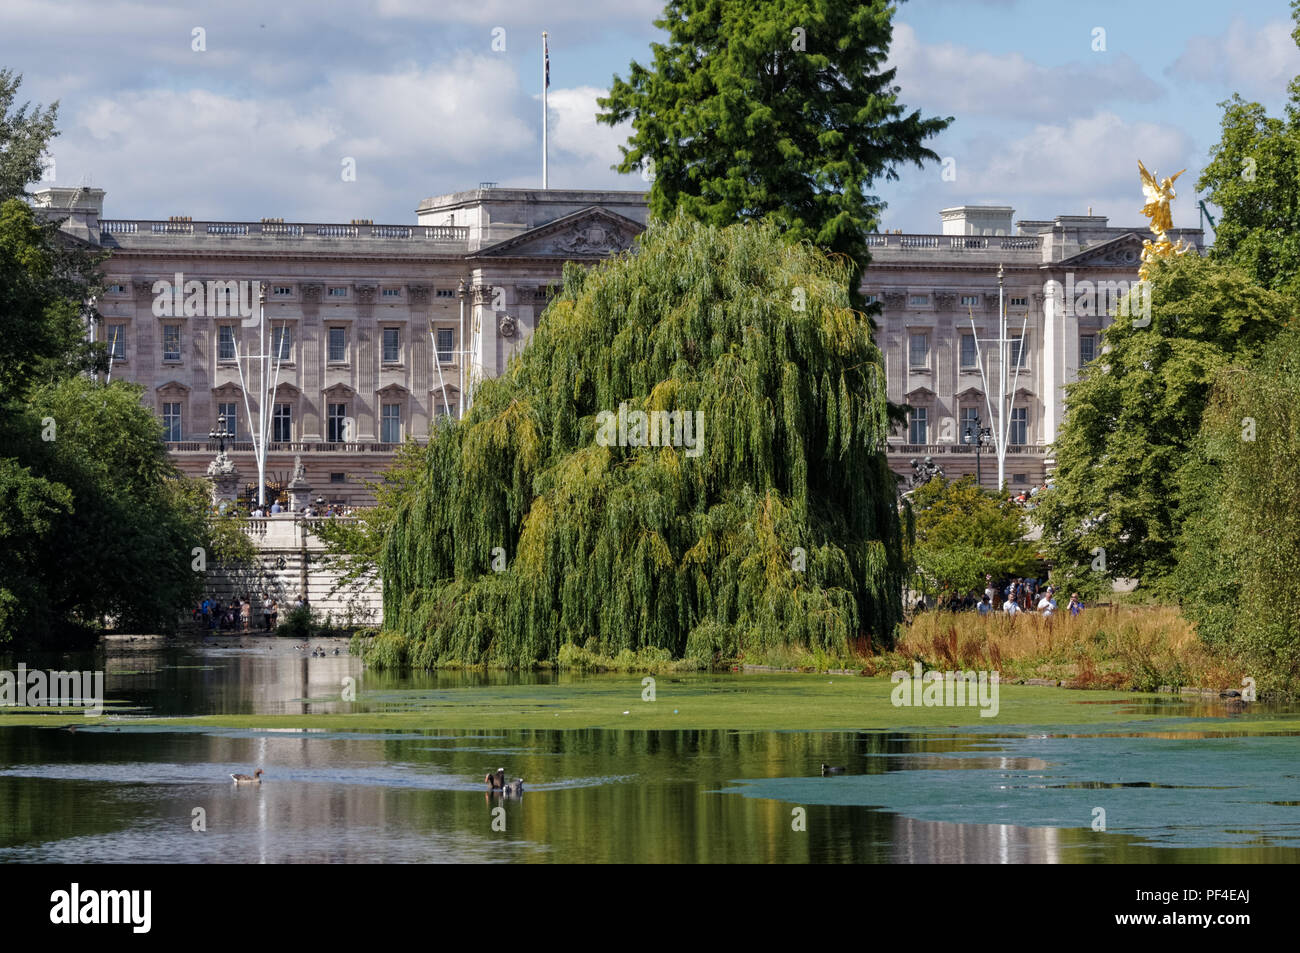 Le parc de St James avec le palais de Buckingham à Londres, Angleterre Royaume-Uni UK Banque D'Images